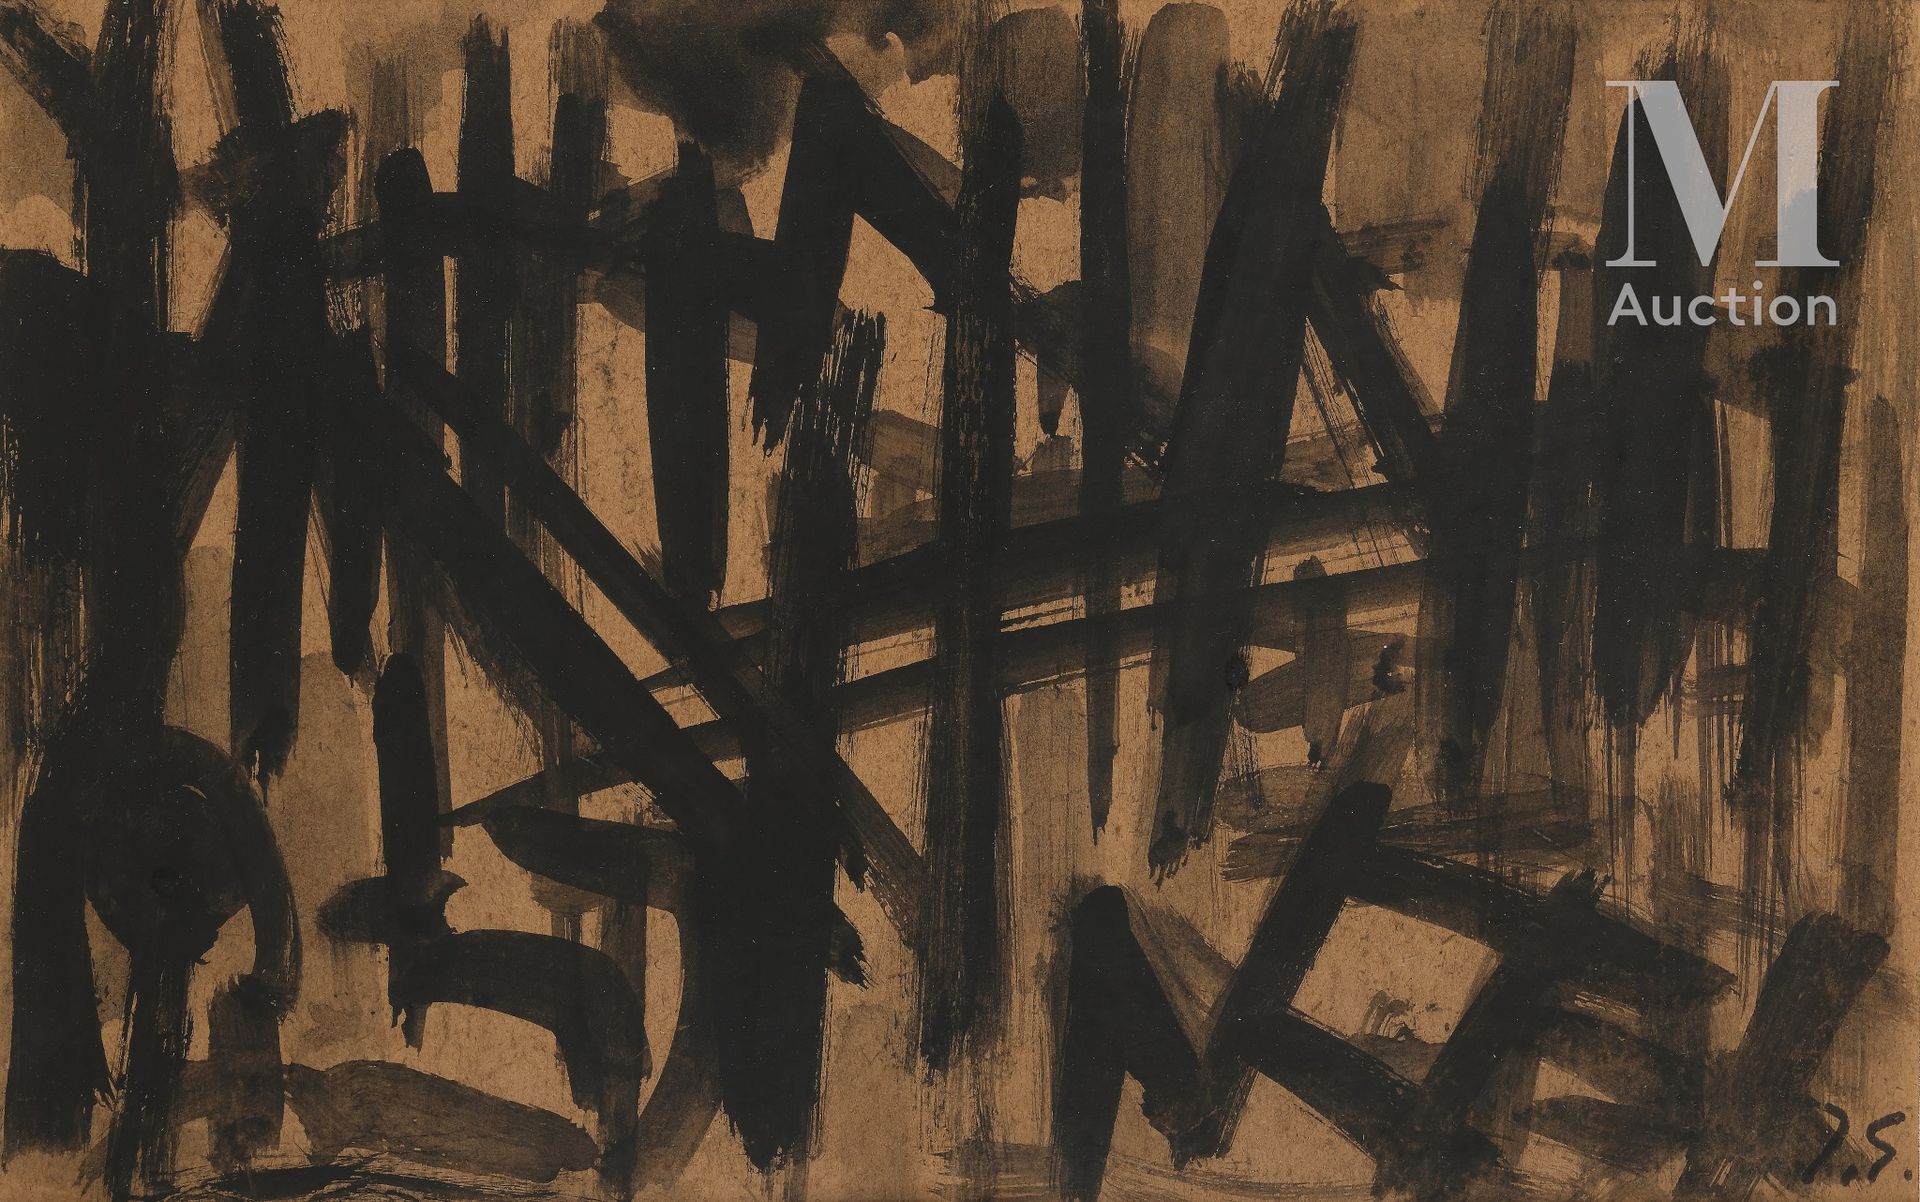 Jacques GERMAIN (1915- 2001) 
Composición




Tinta negra sobre cartulina, compo&hellip;